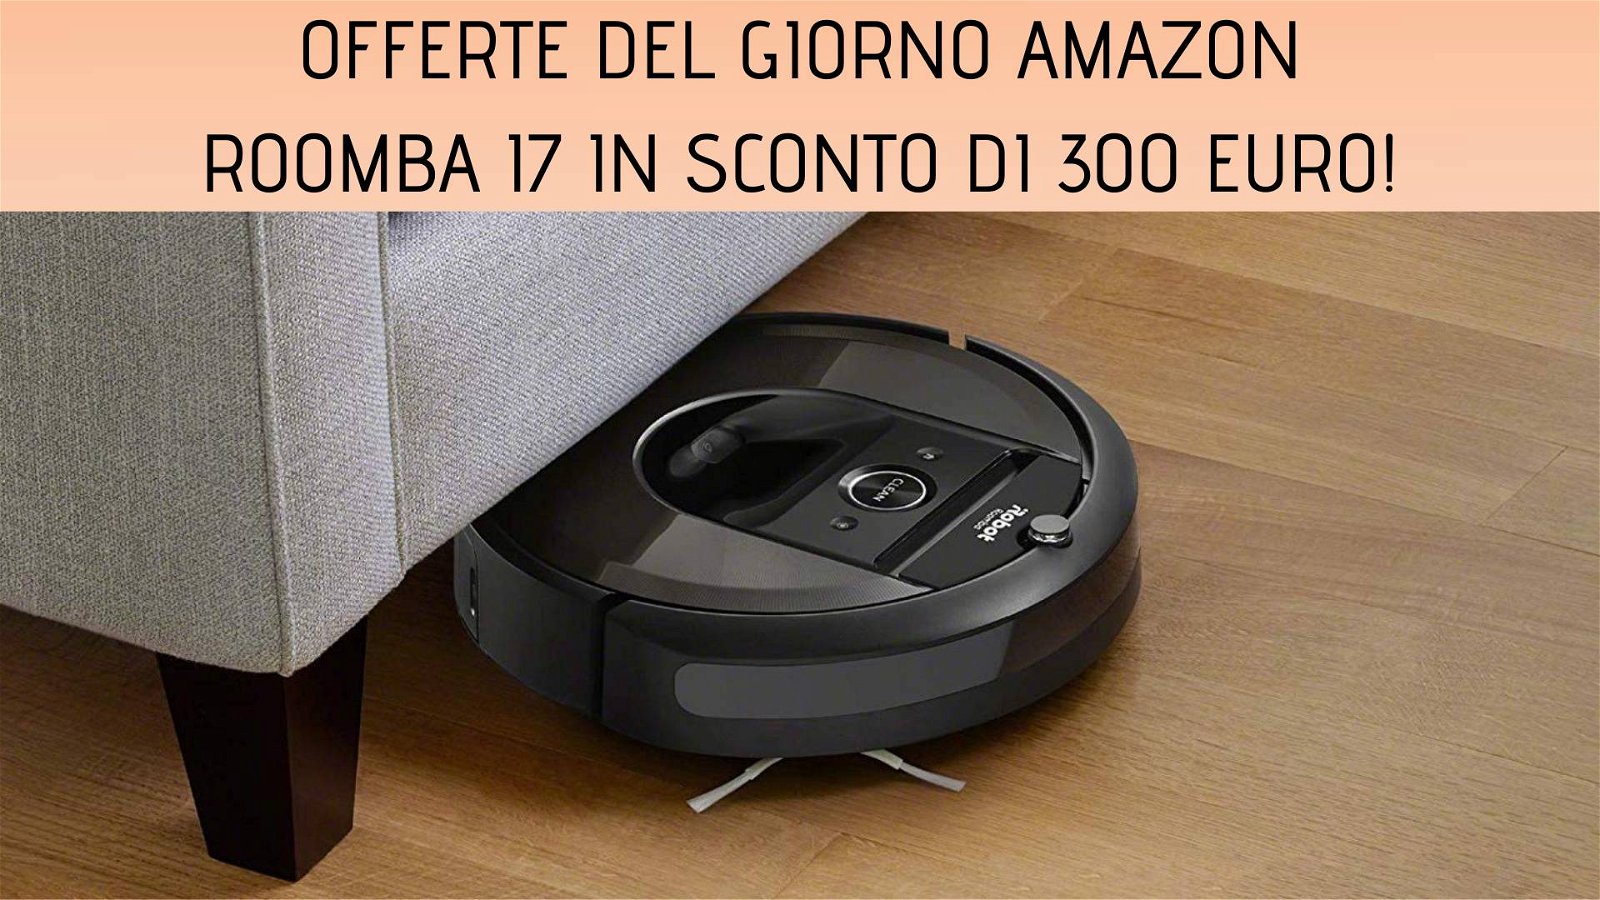 Immagine di Offerte del giorno Amazon: iRobot Roomba i7 scontato di 300 euro!